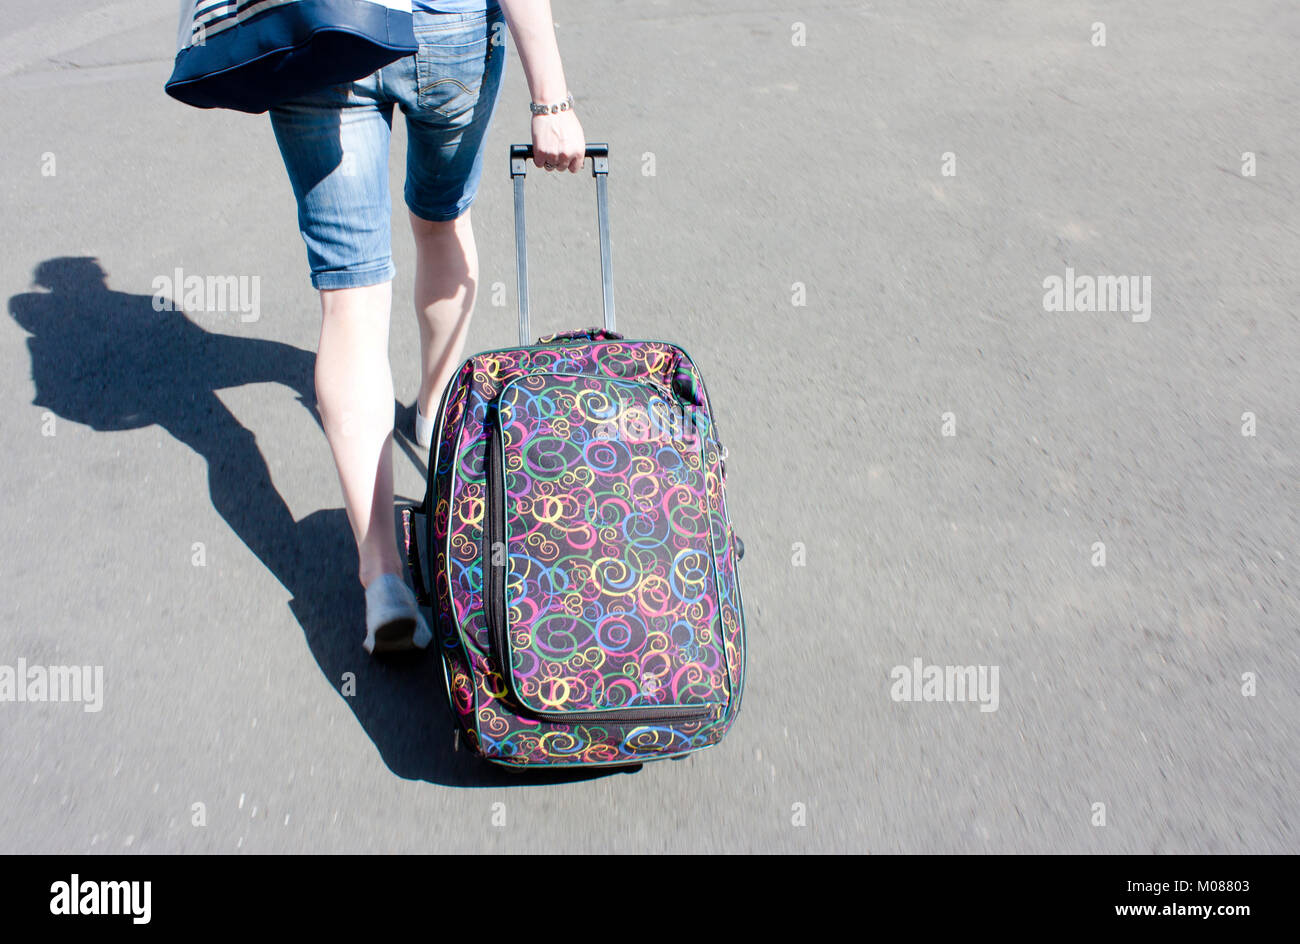 Arte imagina contar Belgrado, Serbia - 17 de septiembre de 2017 : mujer joven en las Bermudas,  pantalones cortos con un carrito de equipaje maleta con ruedas caminando  por las calles de la ciudad Fotografía de stock - Alamy